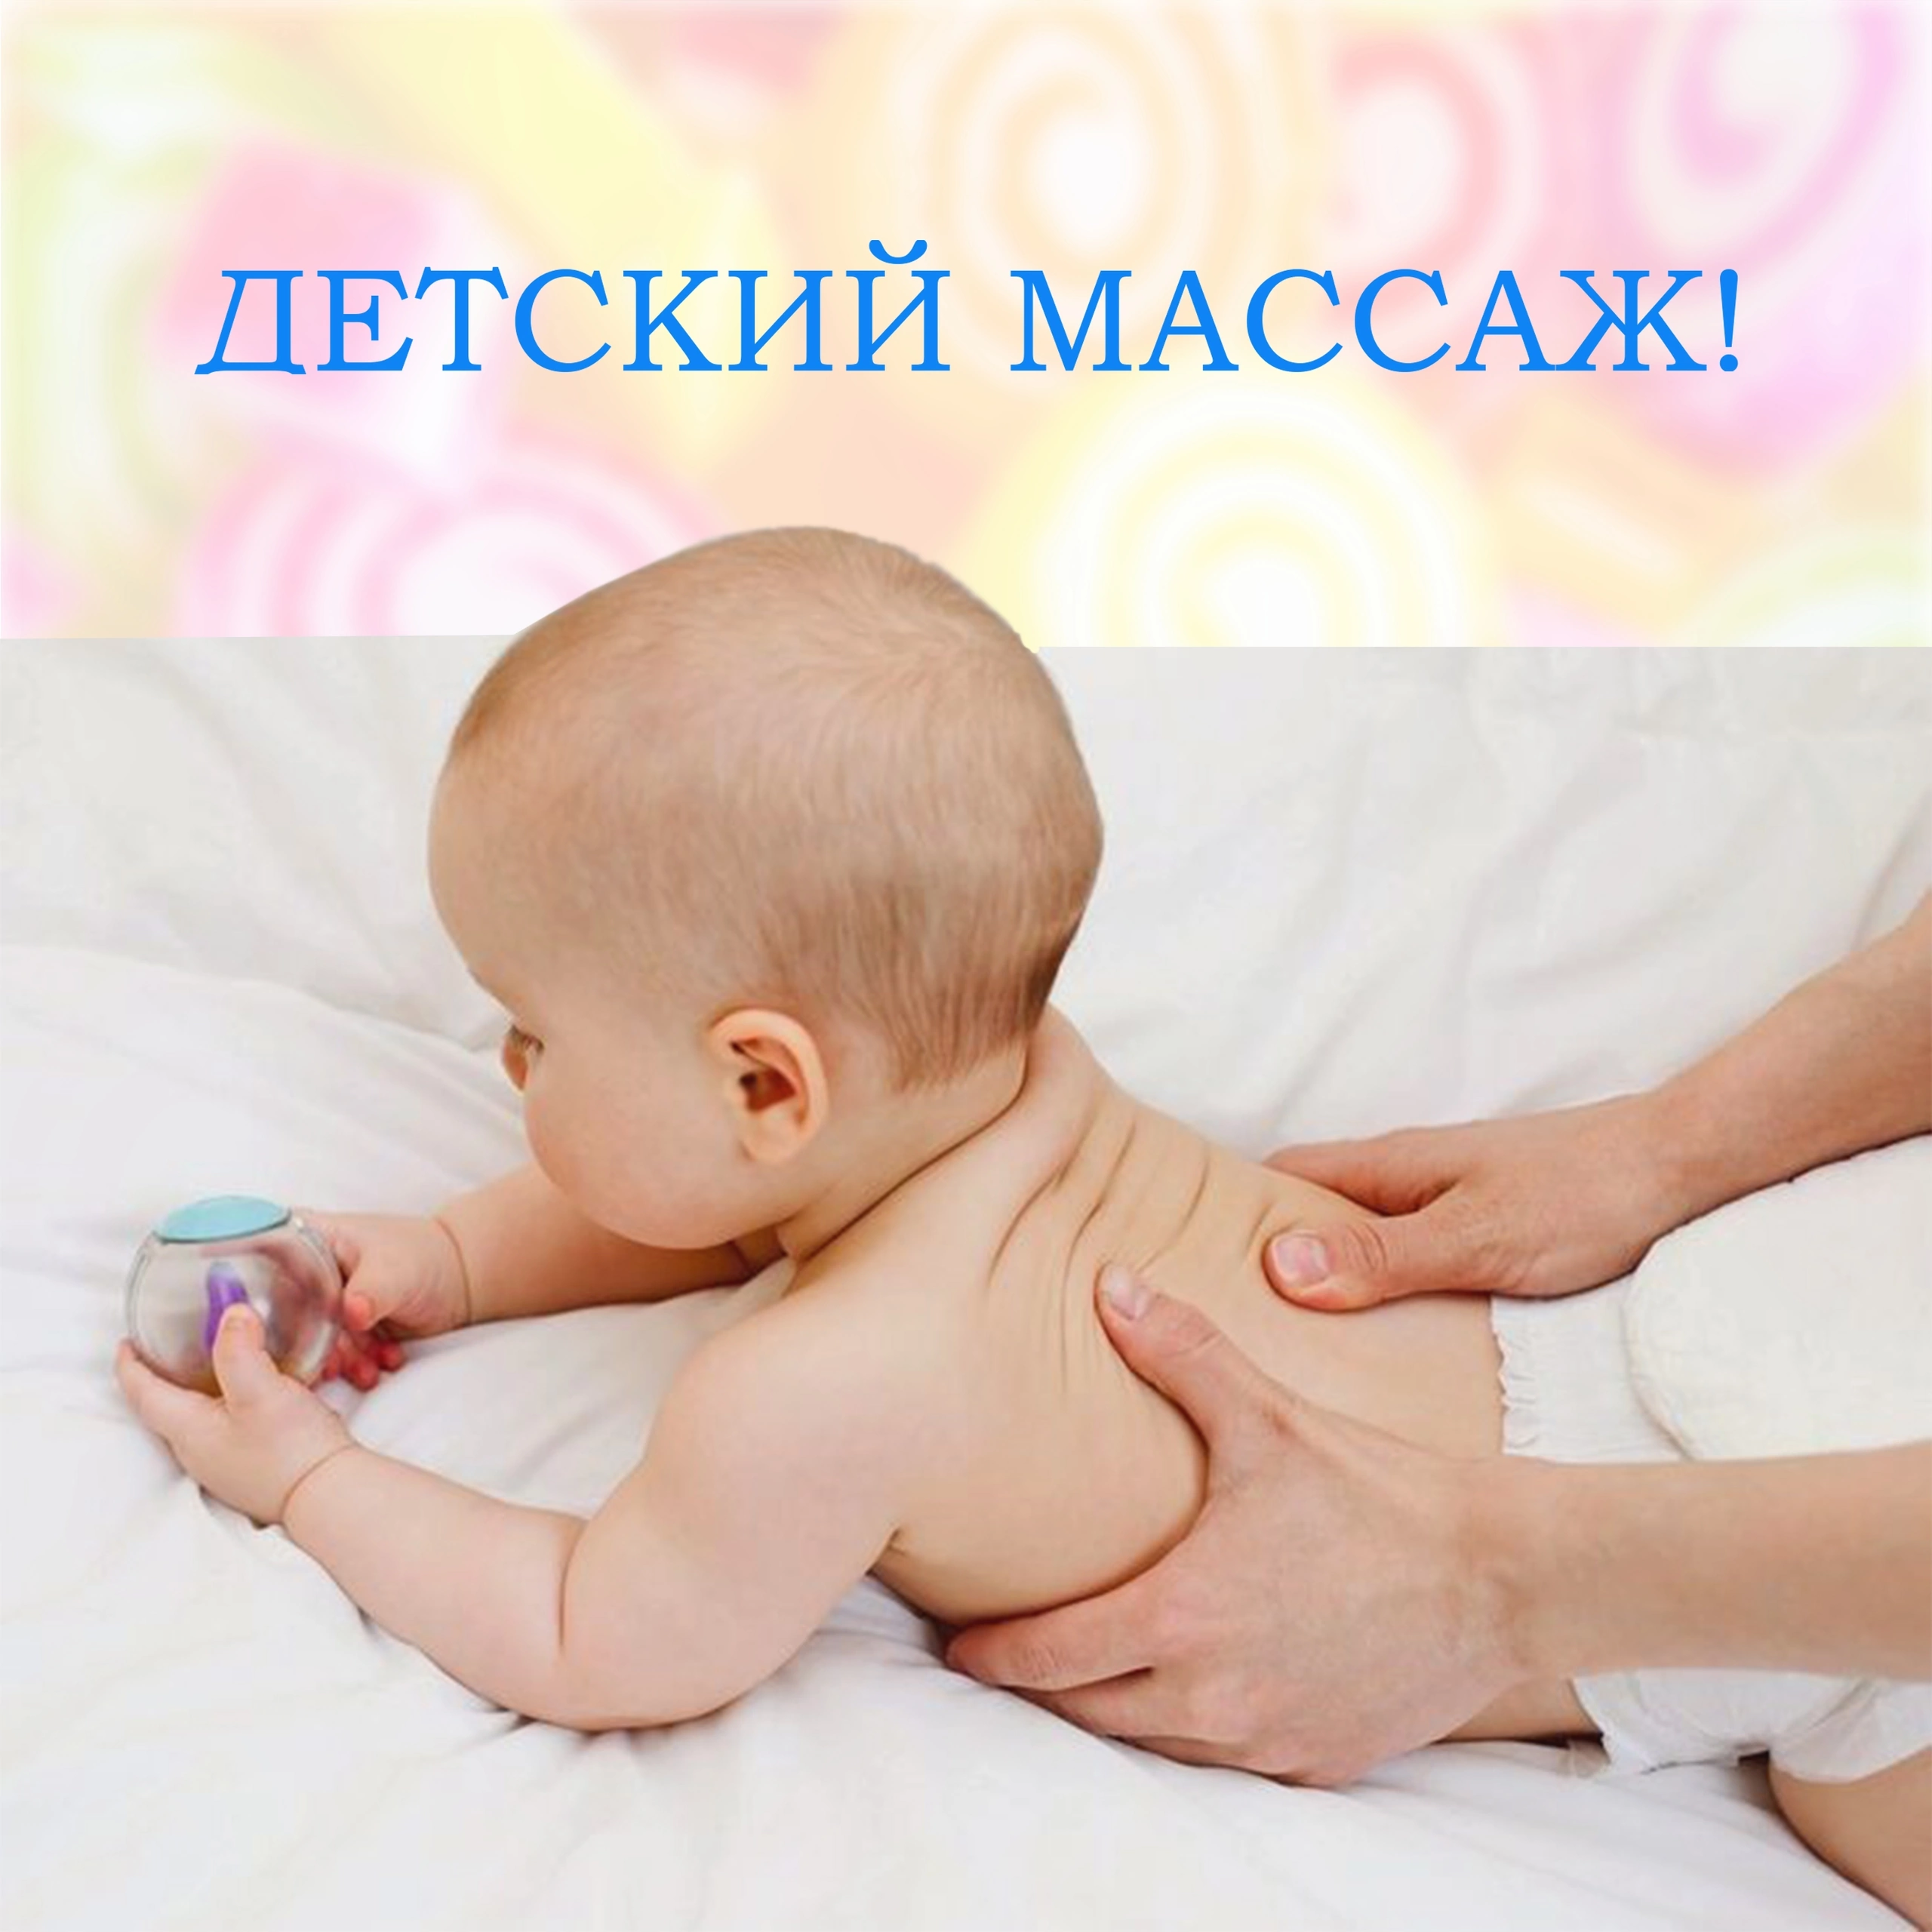 Объявление с Фото - Детский массаж